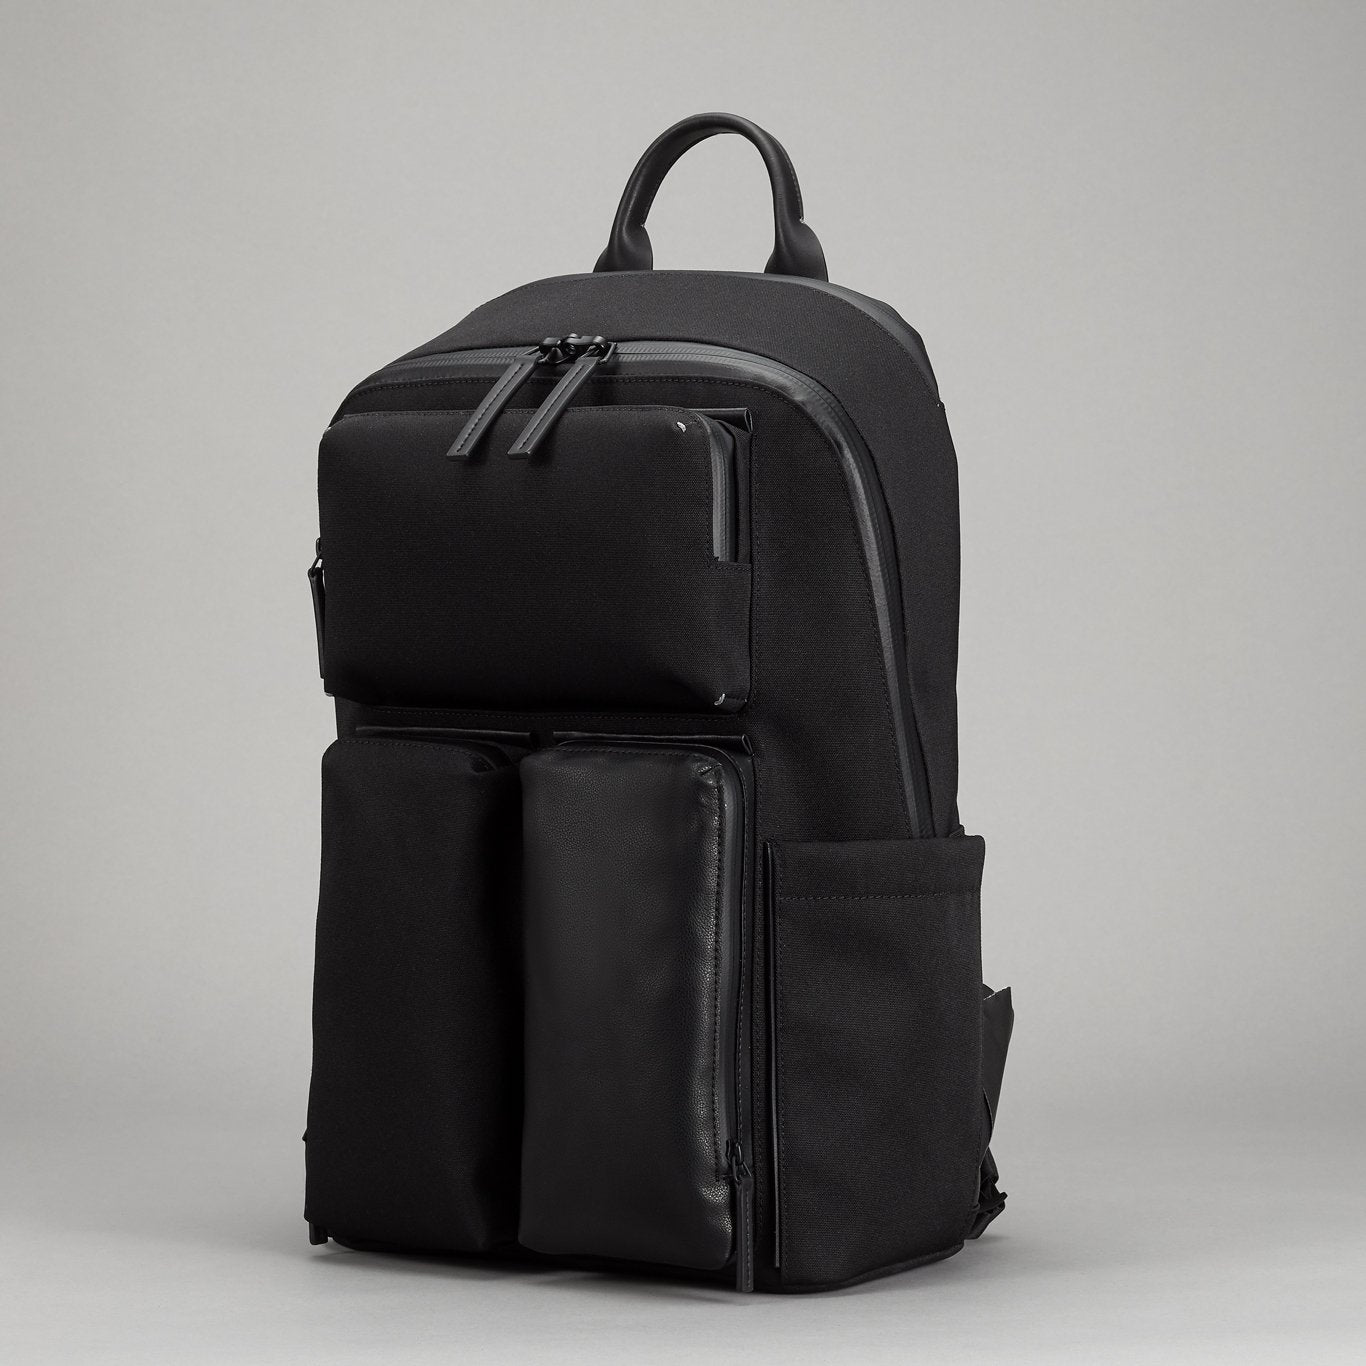 Ridge Backpack | Multi-pocket Backpack | Lightweight Waterproof ...